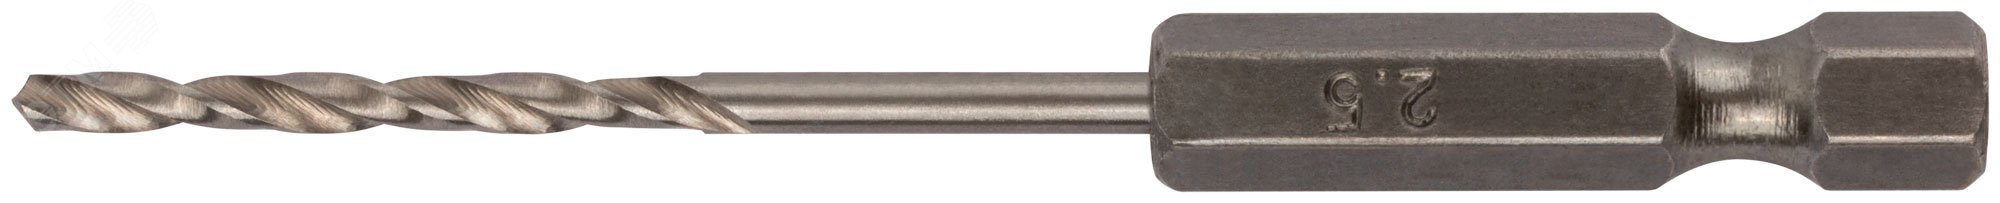 Сверло HSS по металлу,полированное, U-хвостовик под биту, инд.упаковка 2.5 мм 34025 FIT - превью